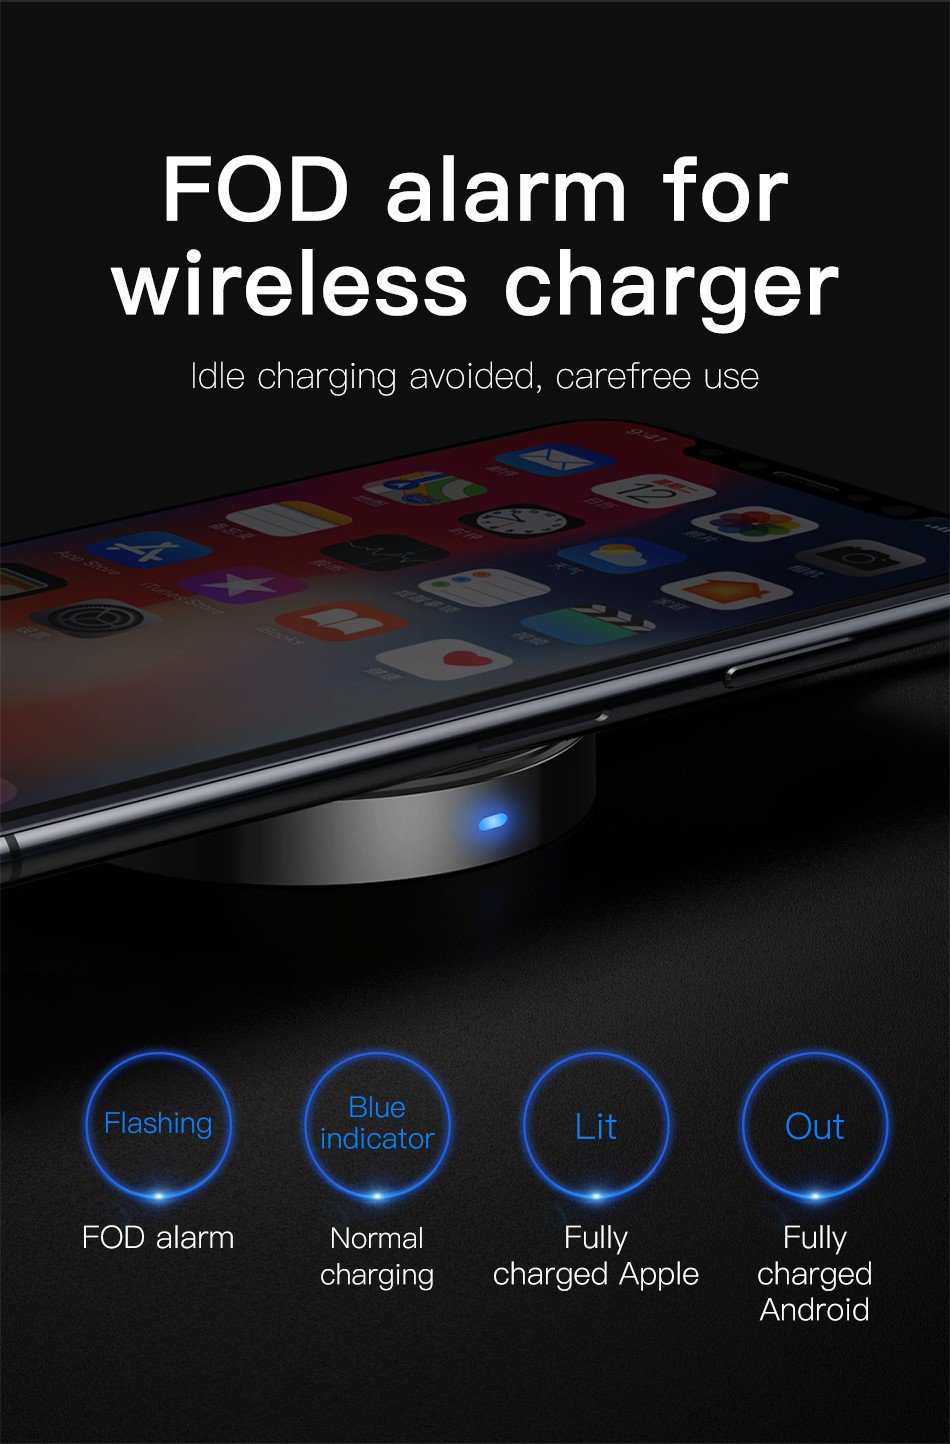 Cáp sạc tích hợp sạc không dây Baseus Wireless Charge Lightning Cable cho iPhone 8/ iPX/ XS/ RX / iP XS Max, Samsung S9/N9 (2.4A, 1.2m,5W Wireless Charger)